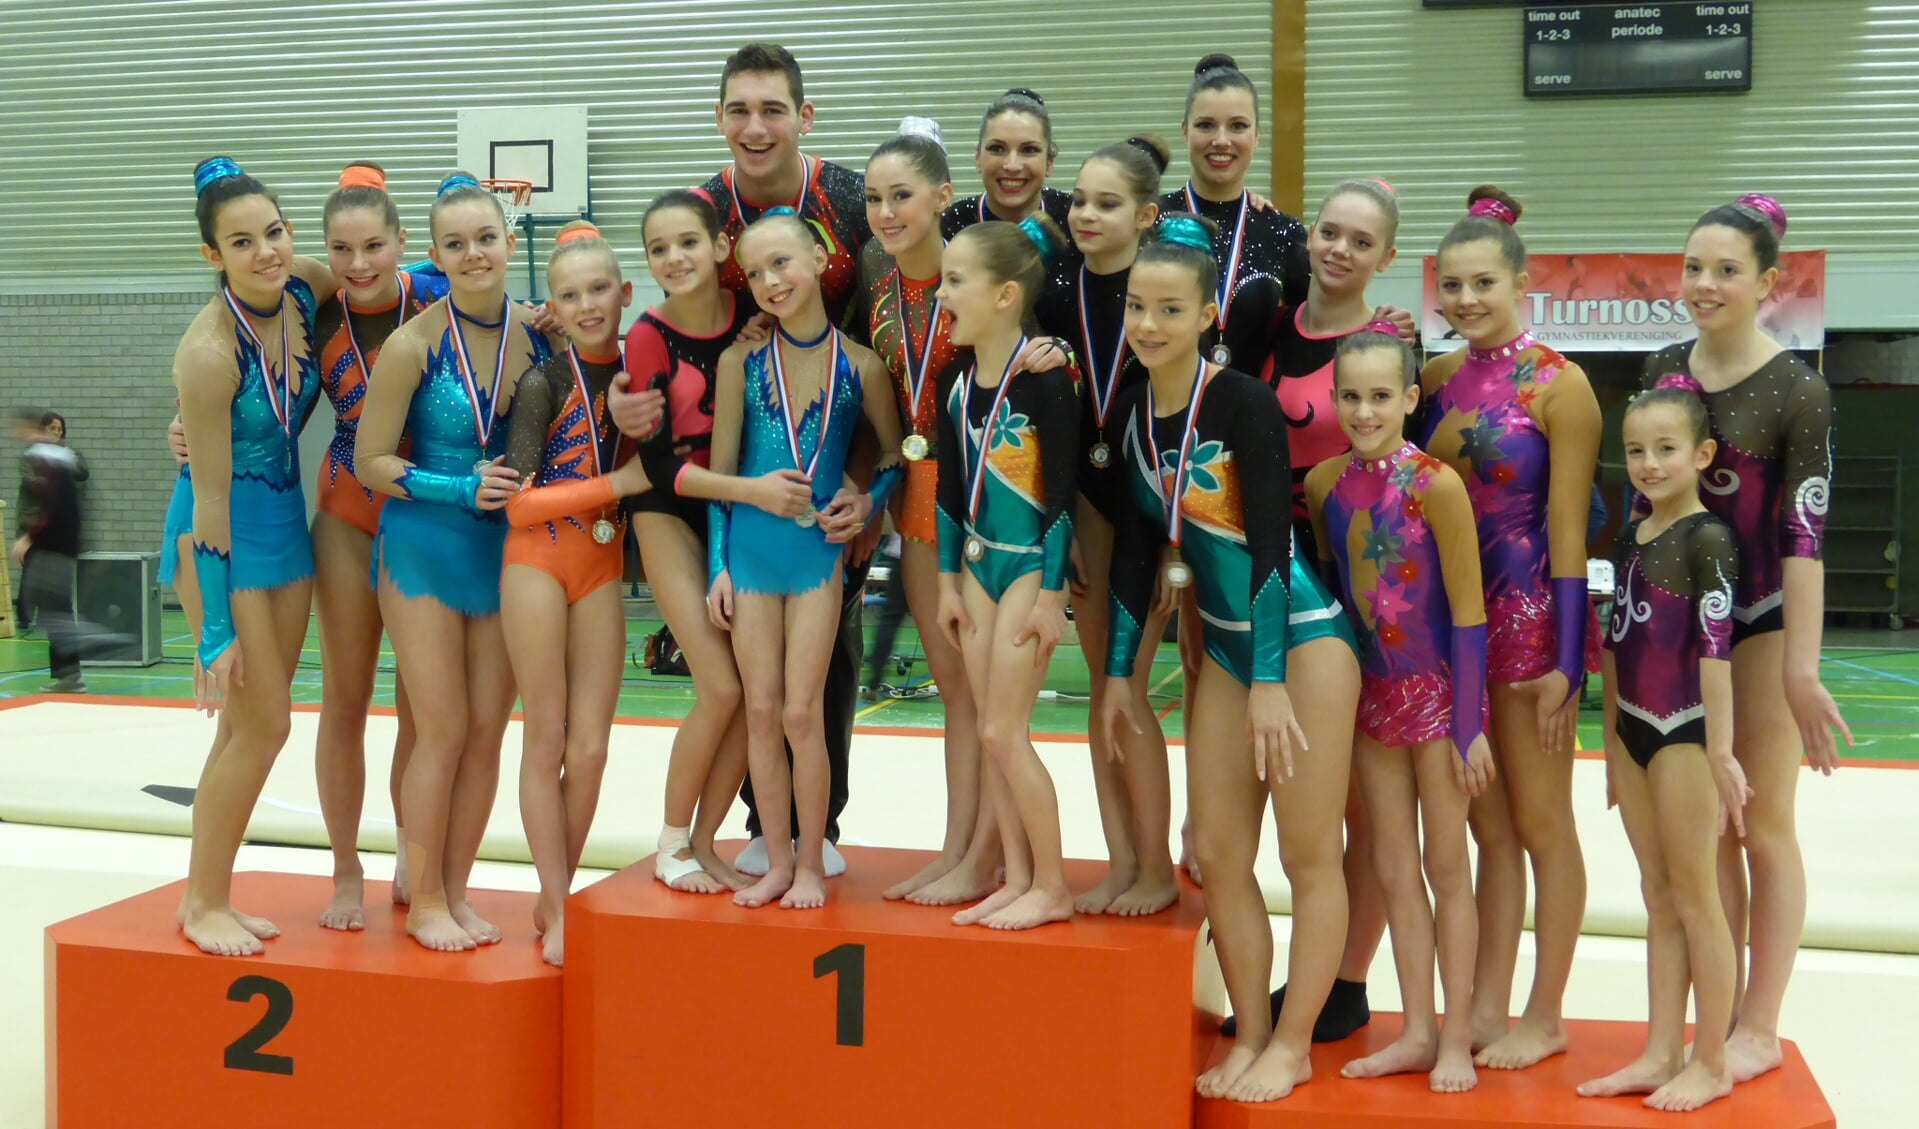 De Brabantse kampioenschappen acrobatische gymnastiek vonden dit weekend plaats.